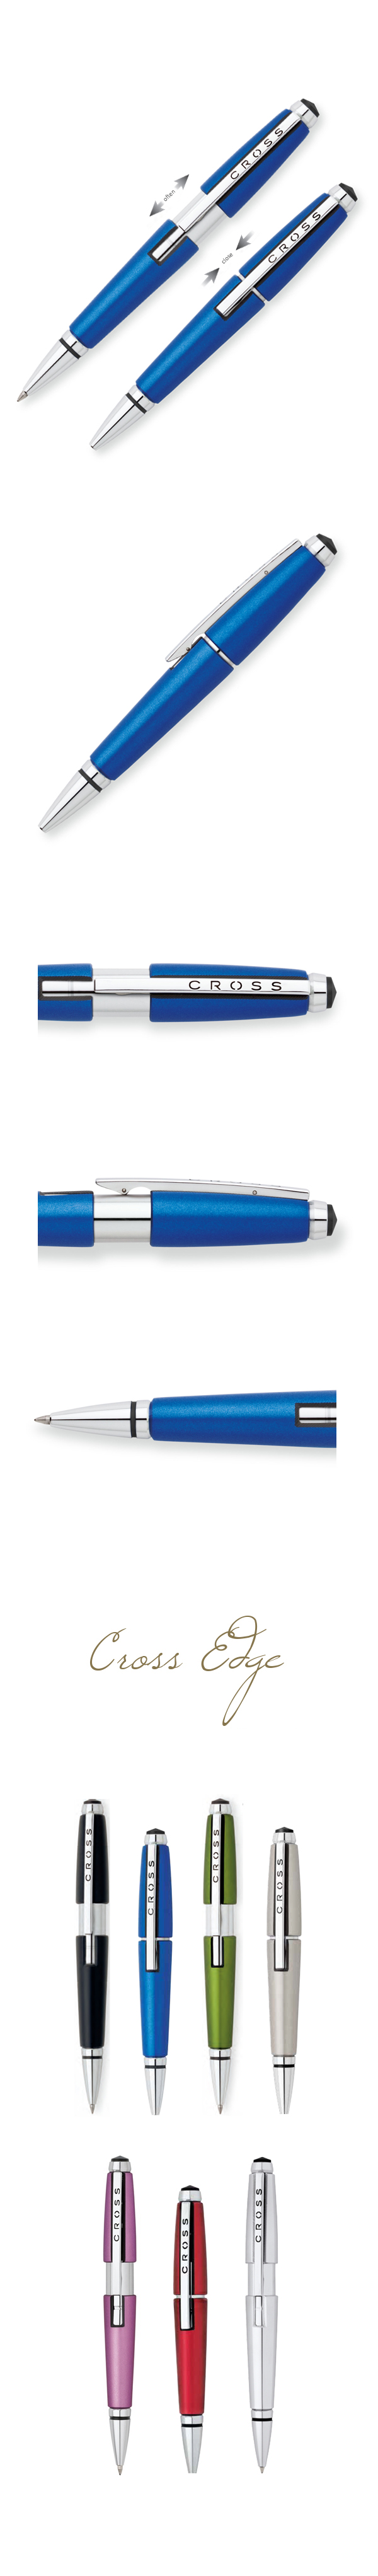 【2/24~3/1精選品牌8折優惠】【可雷雕】美國 CROSS Edge 科技藍鋼珠筆 AT0555-3